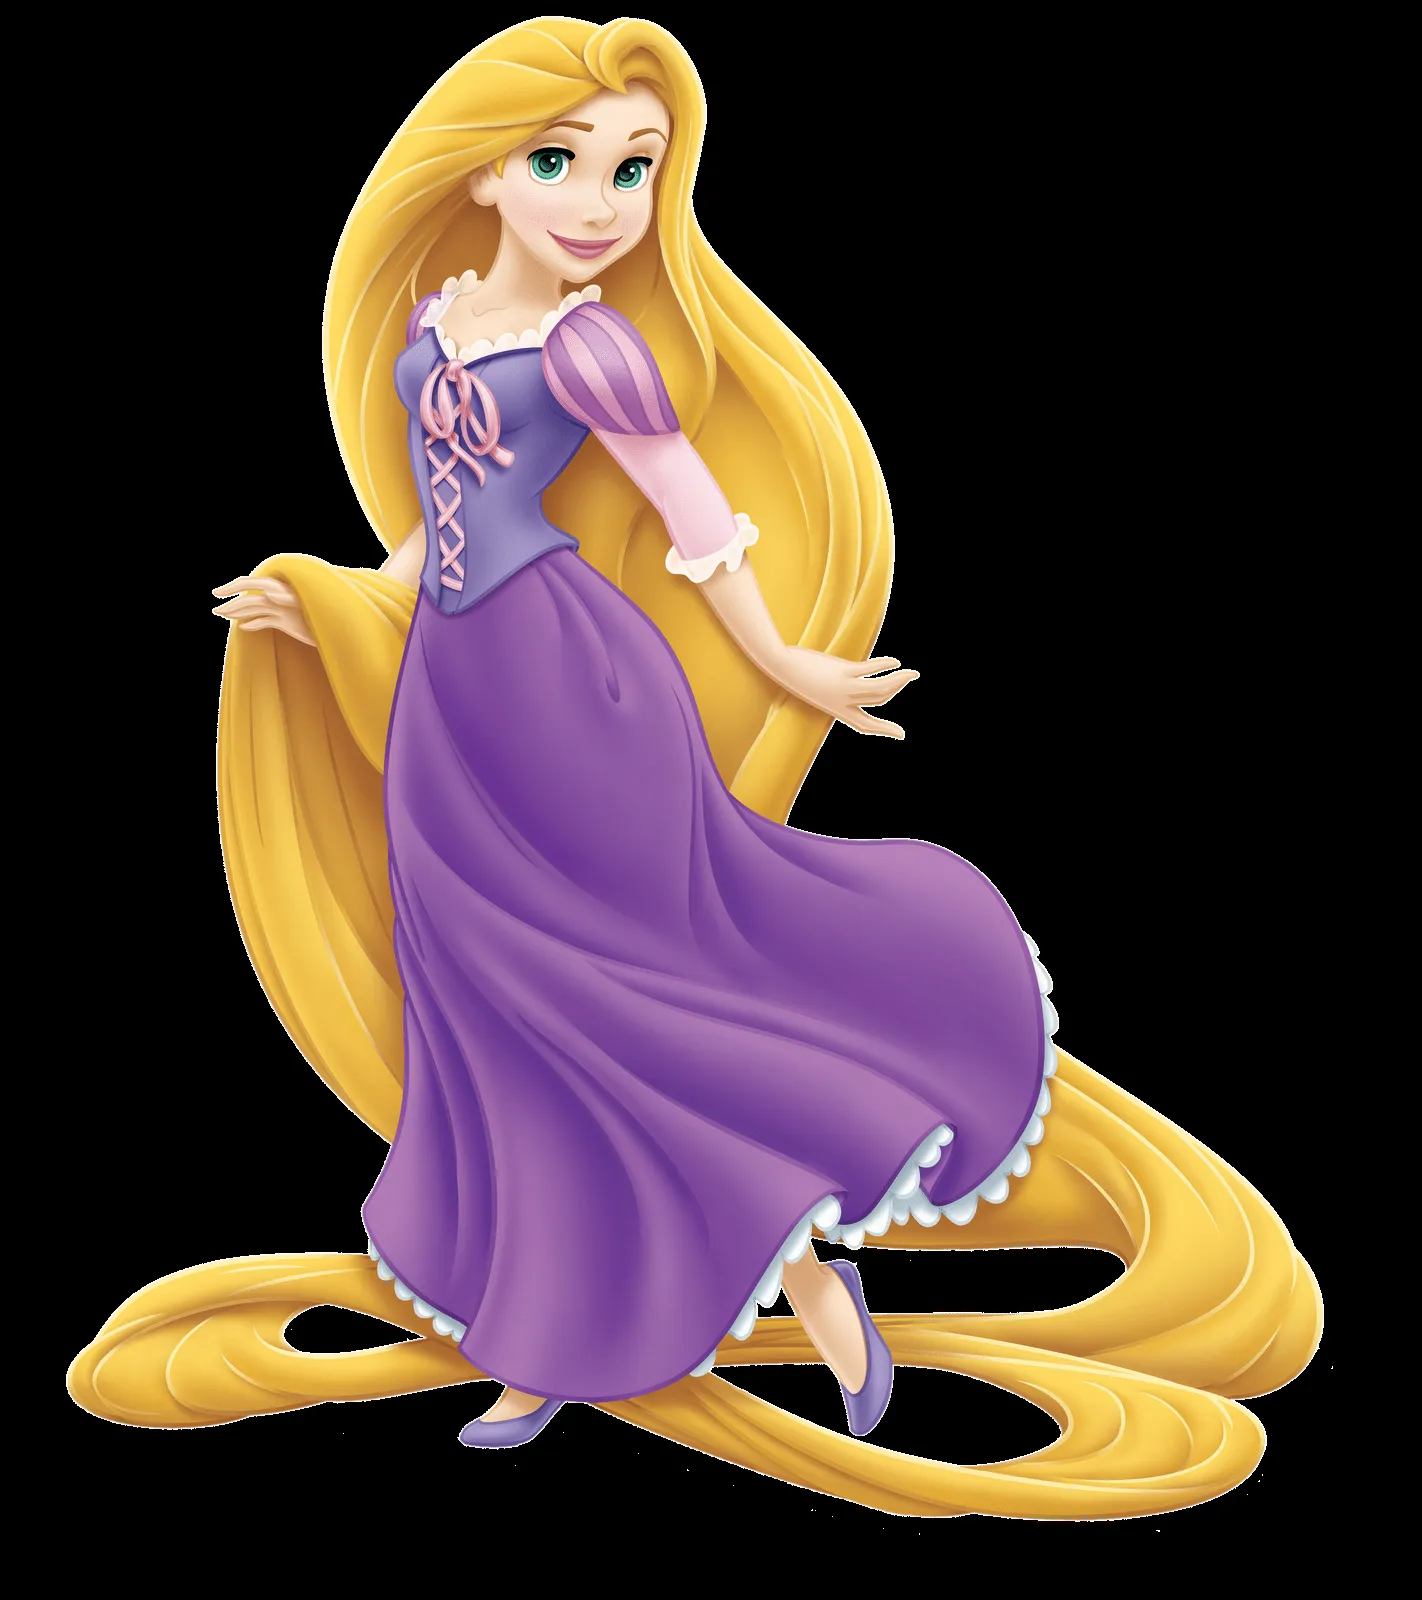 Marcos de princesa rapunzel Disney png - Imagui